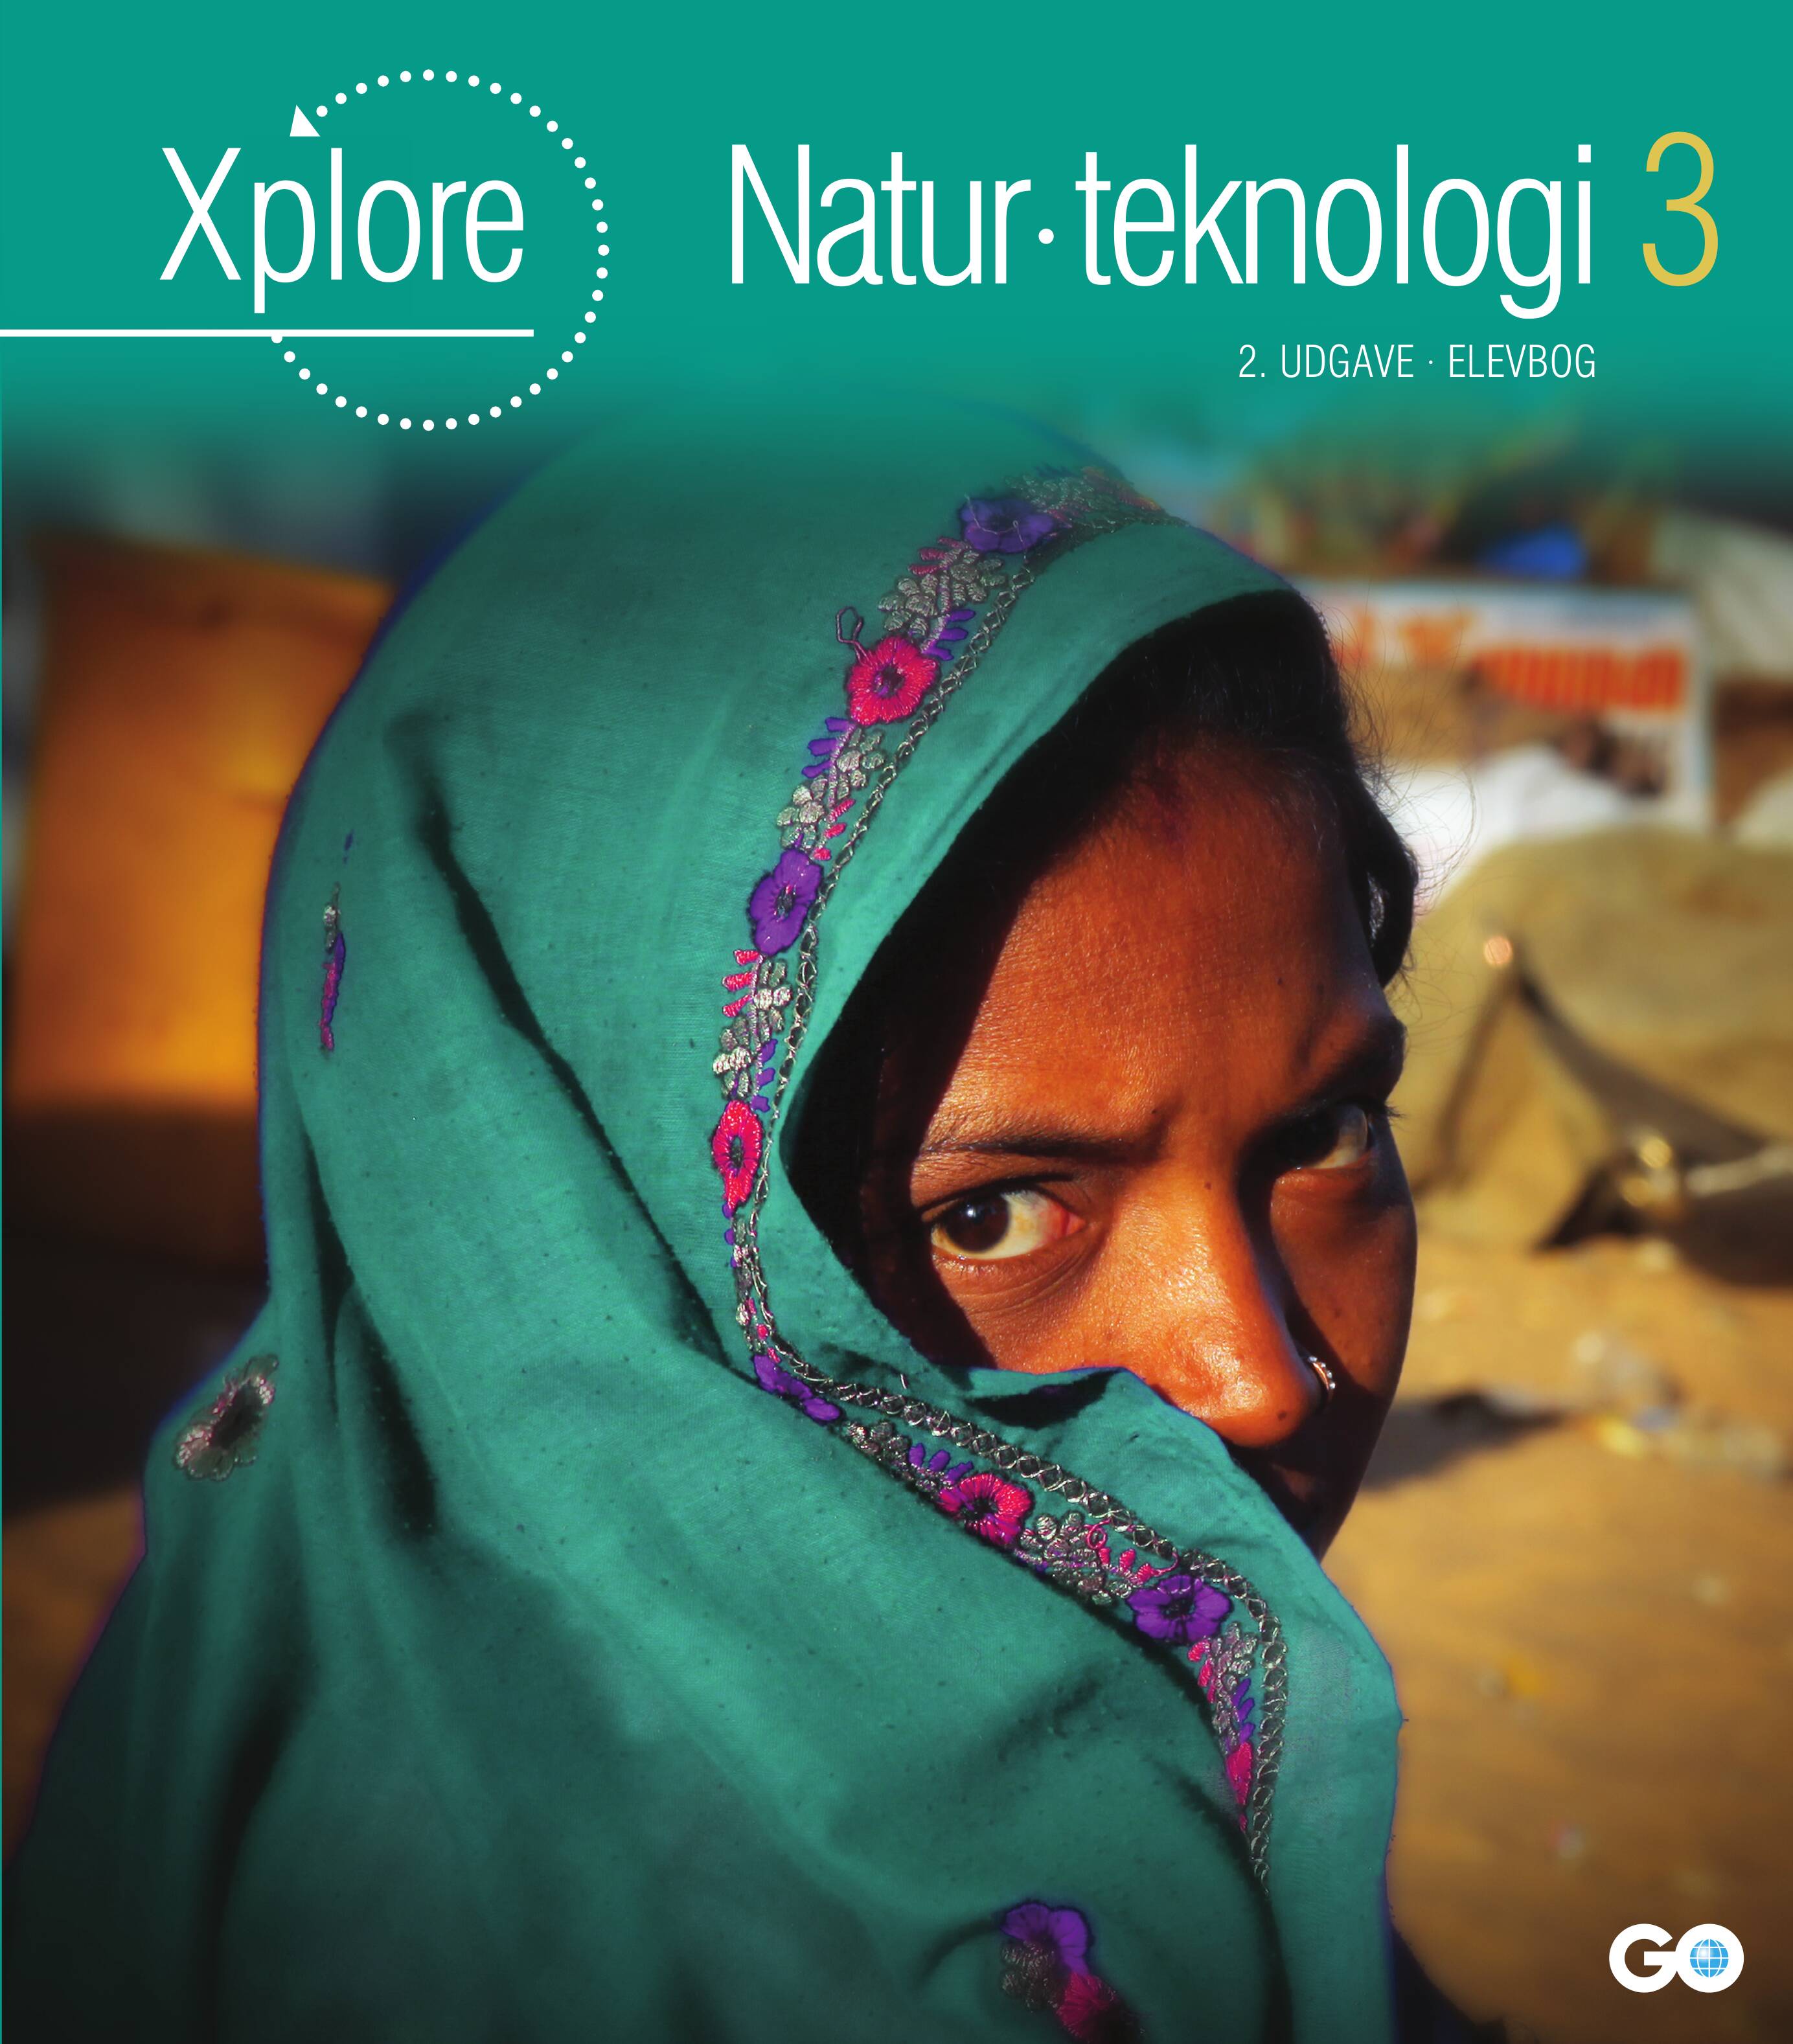 Xplore Natur/teknologi 3 Elevbog - 2. udgave